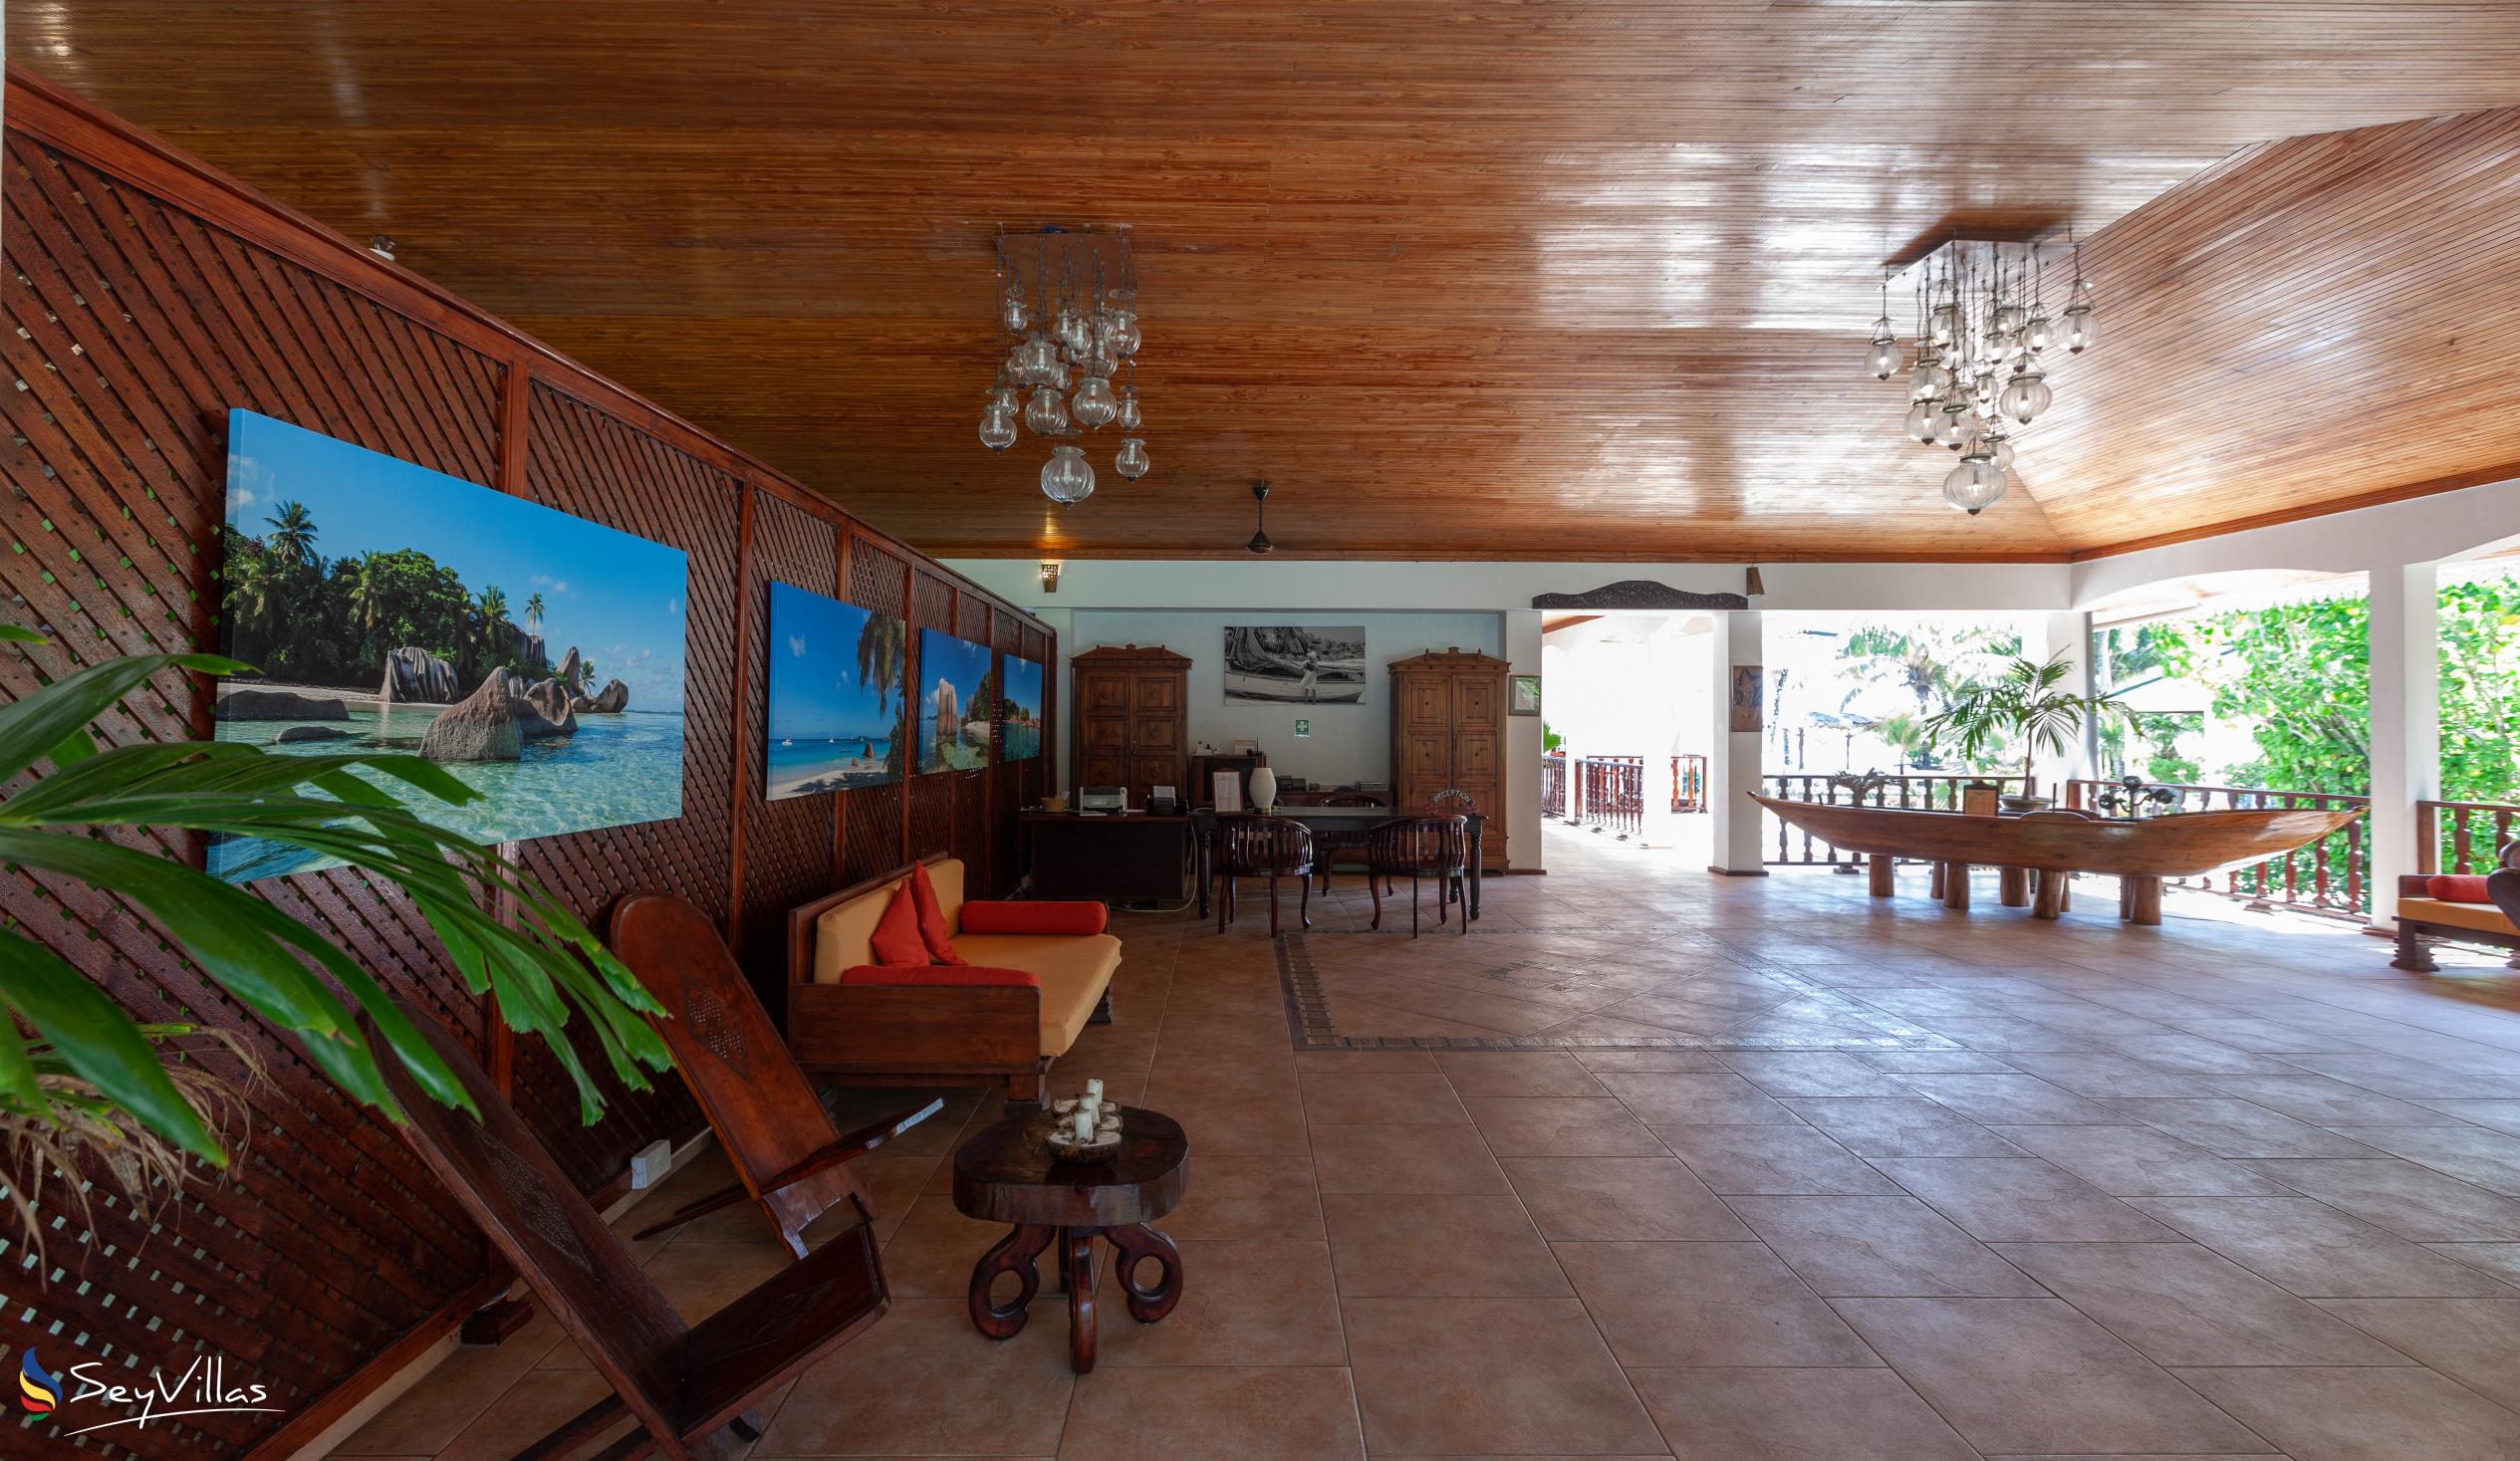 Foto 20: Hotel Cote D'Or Lodge - Innenbereich - Praslin (Seychellen)